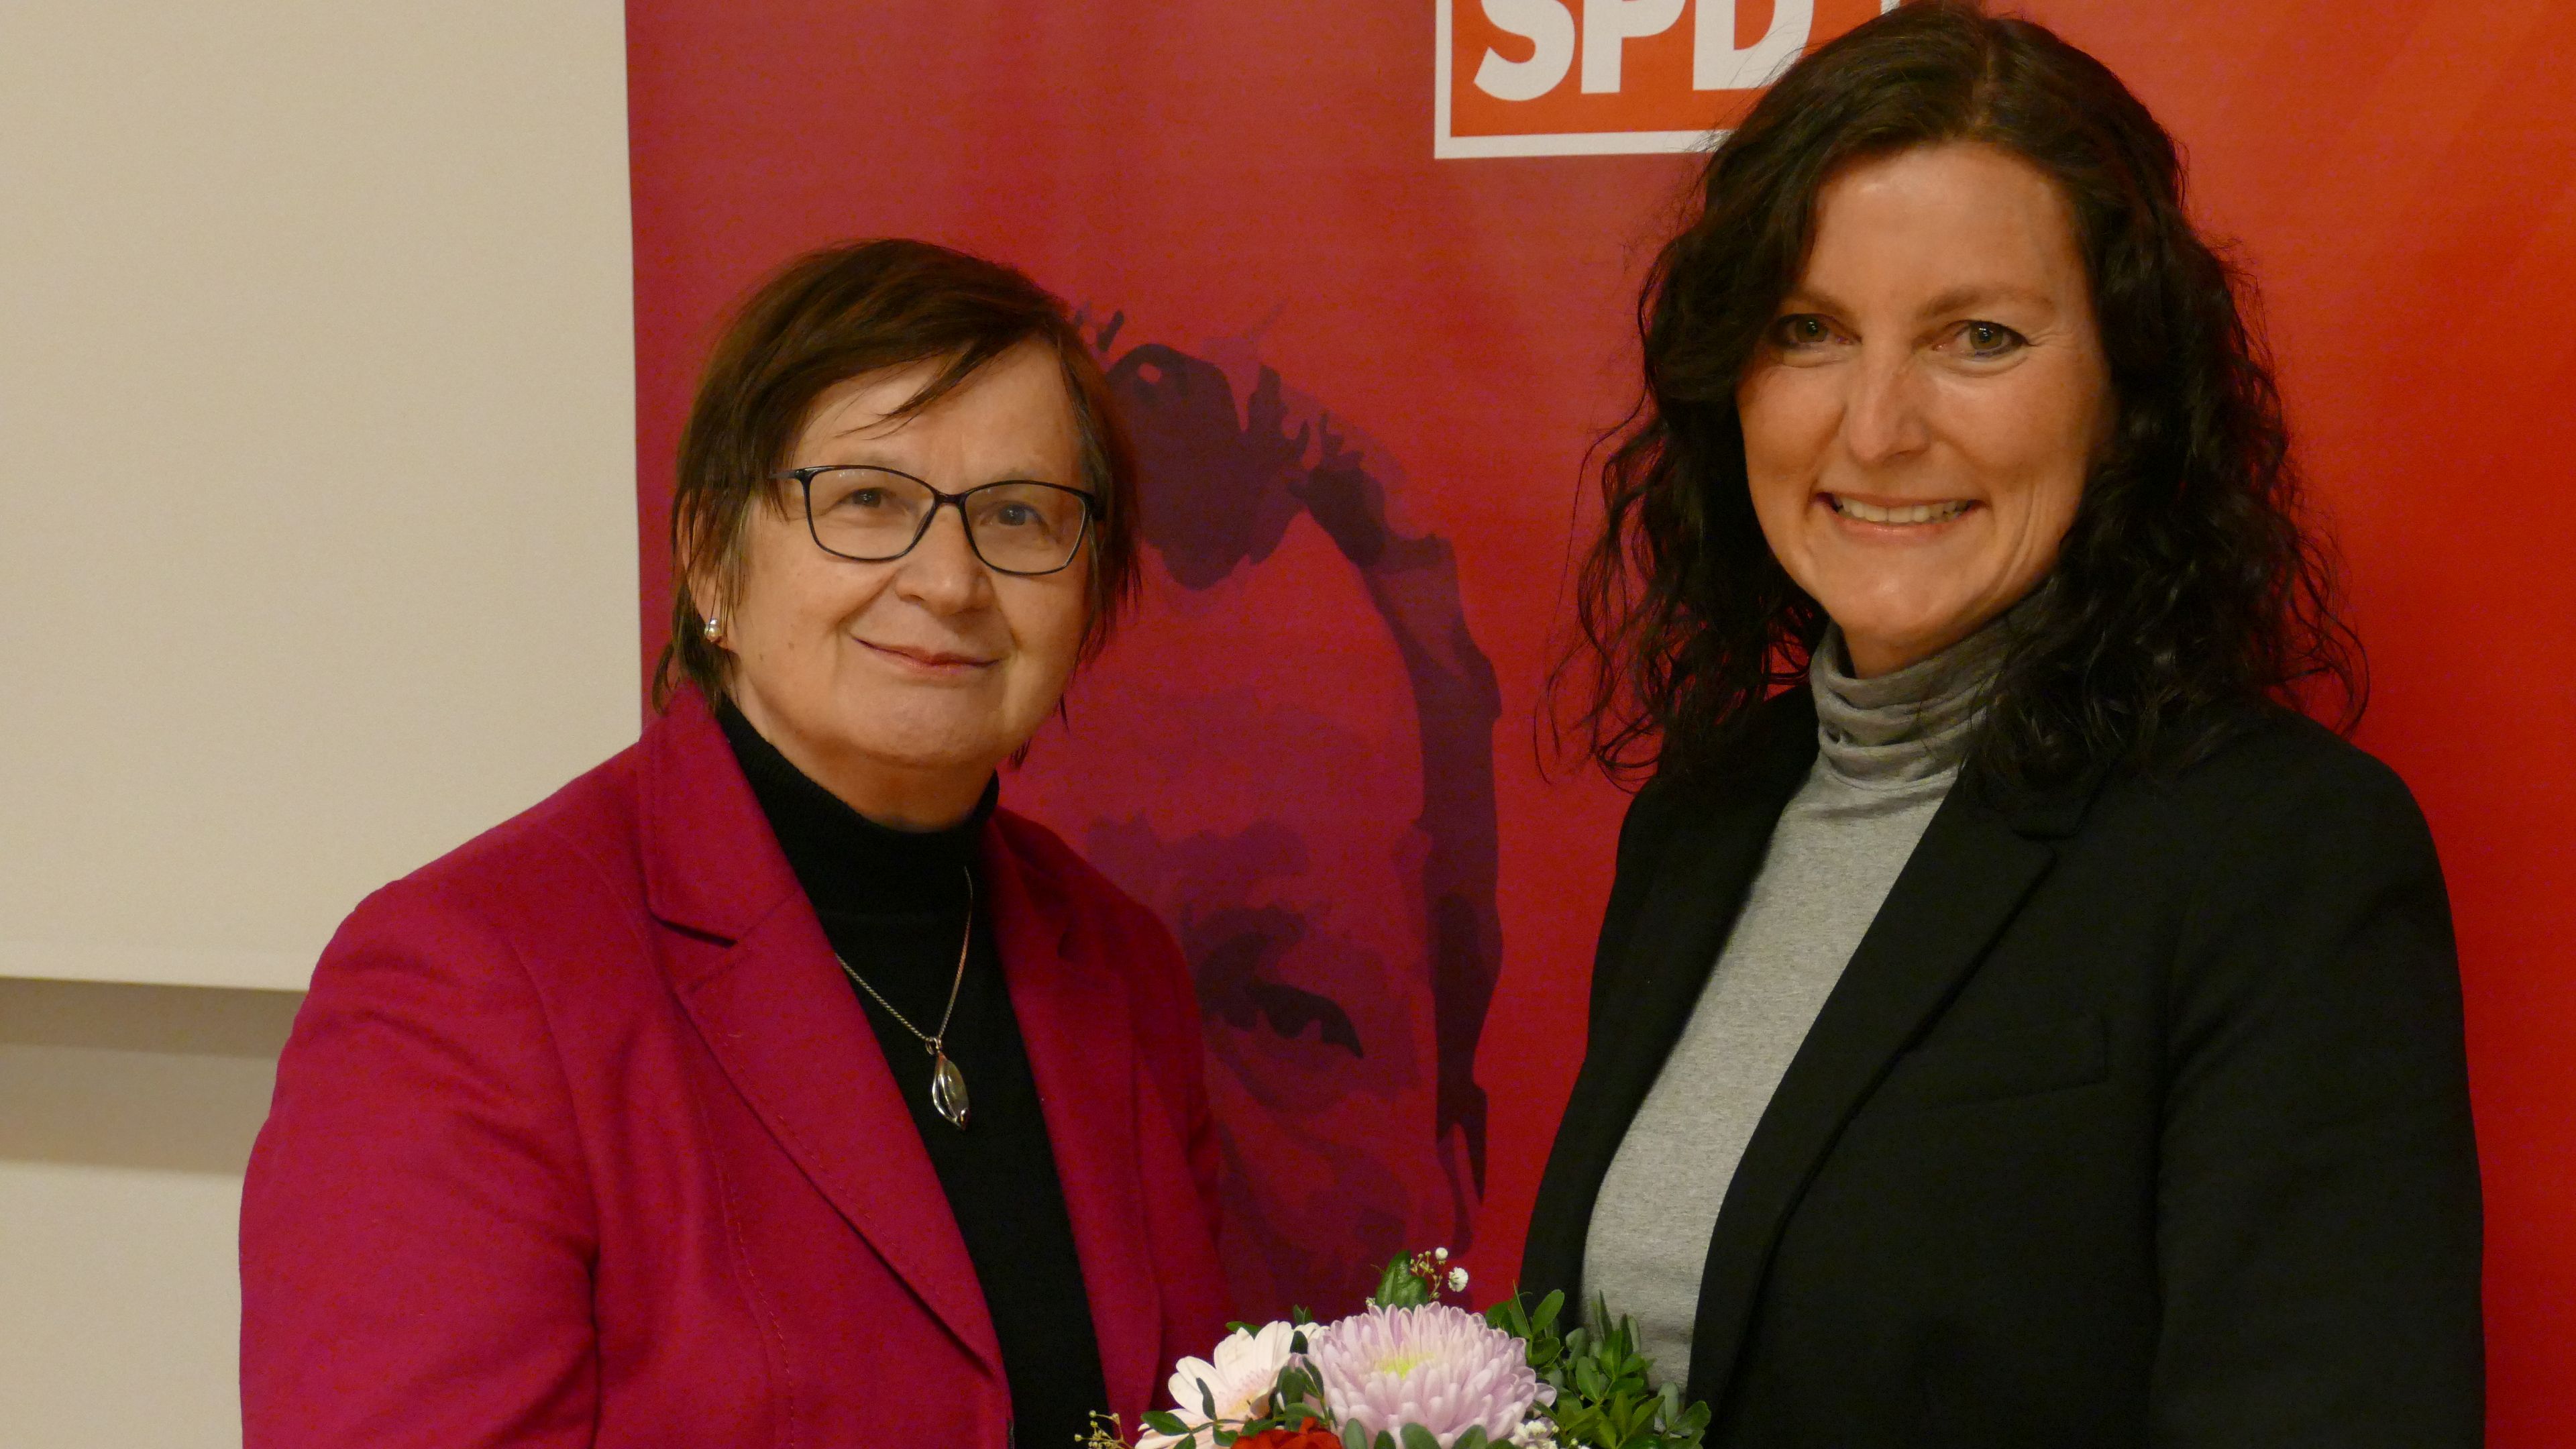 Glückwunsch von der Vorgängerin: Pia van de Lageweg (rechts) tritt als Nachfolgerin von Renate Geuter bei der Landtagswahl am 9. Oktober für die SPD als Direktkandidatin an. Foto: Stix